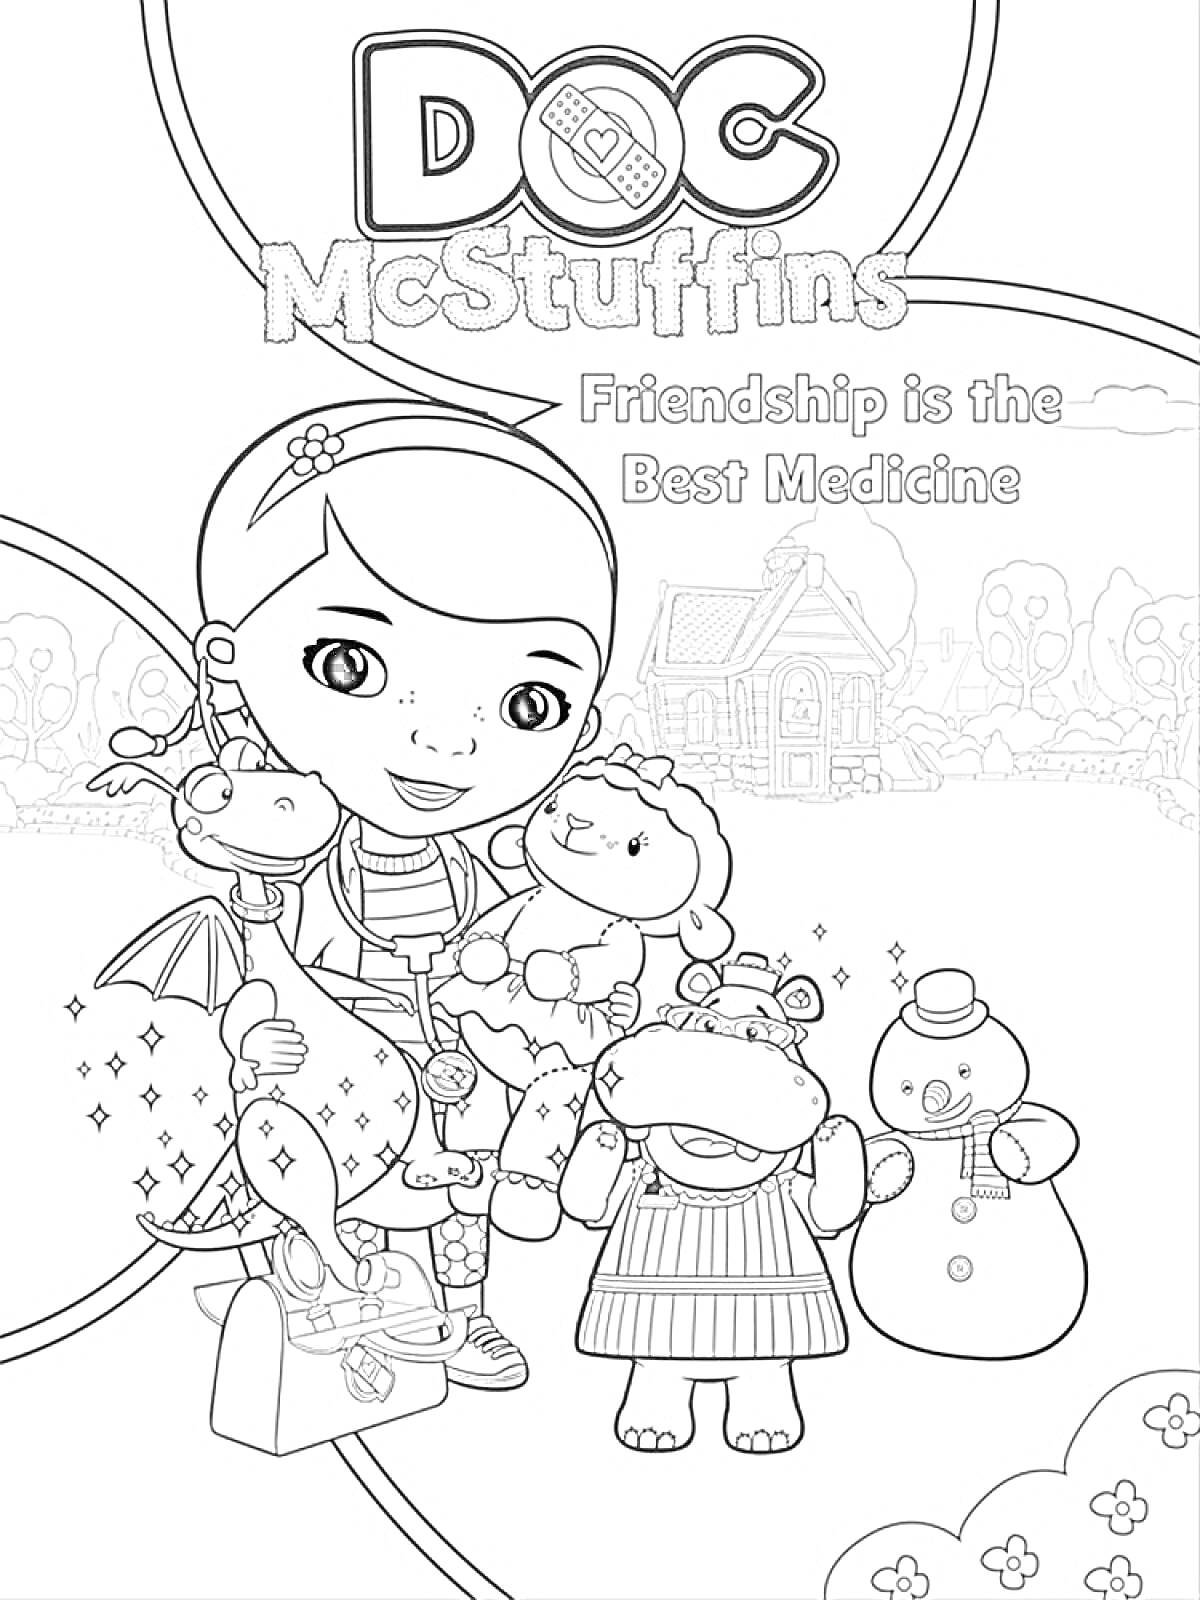 Раскраска Доктор Плюшева с игрушечным драконом, овечкой, бегемотом, снеговиком на фоне домика и деревьев, текст 